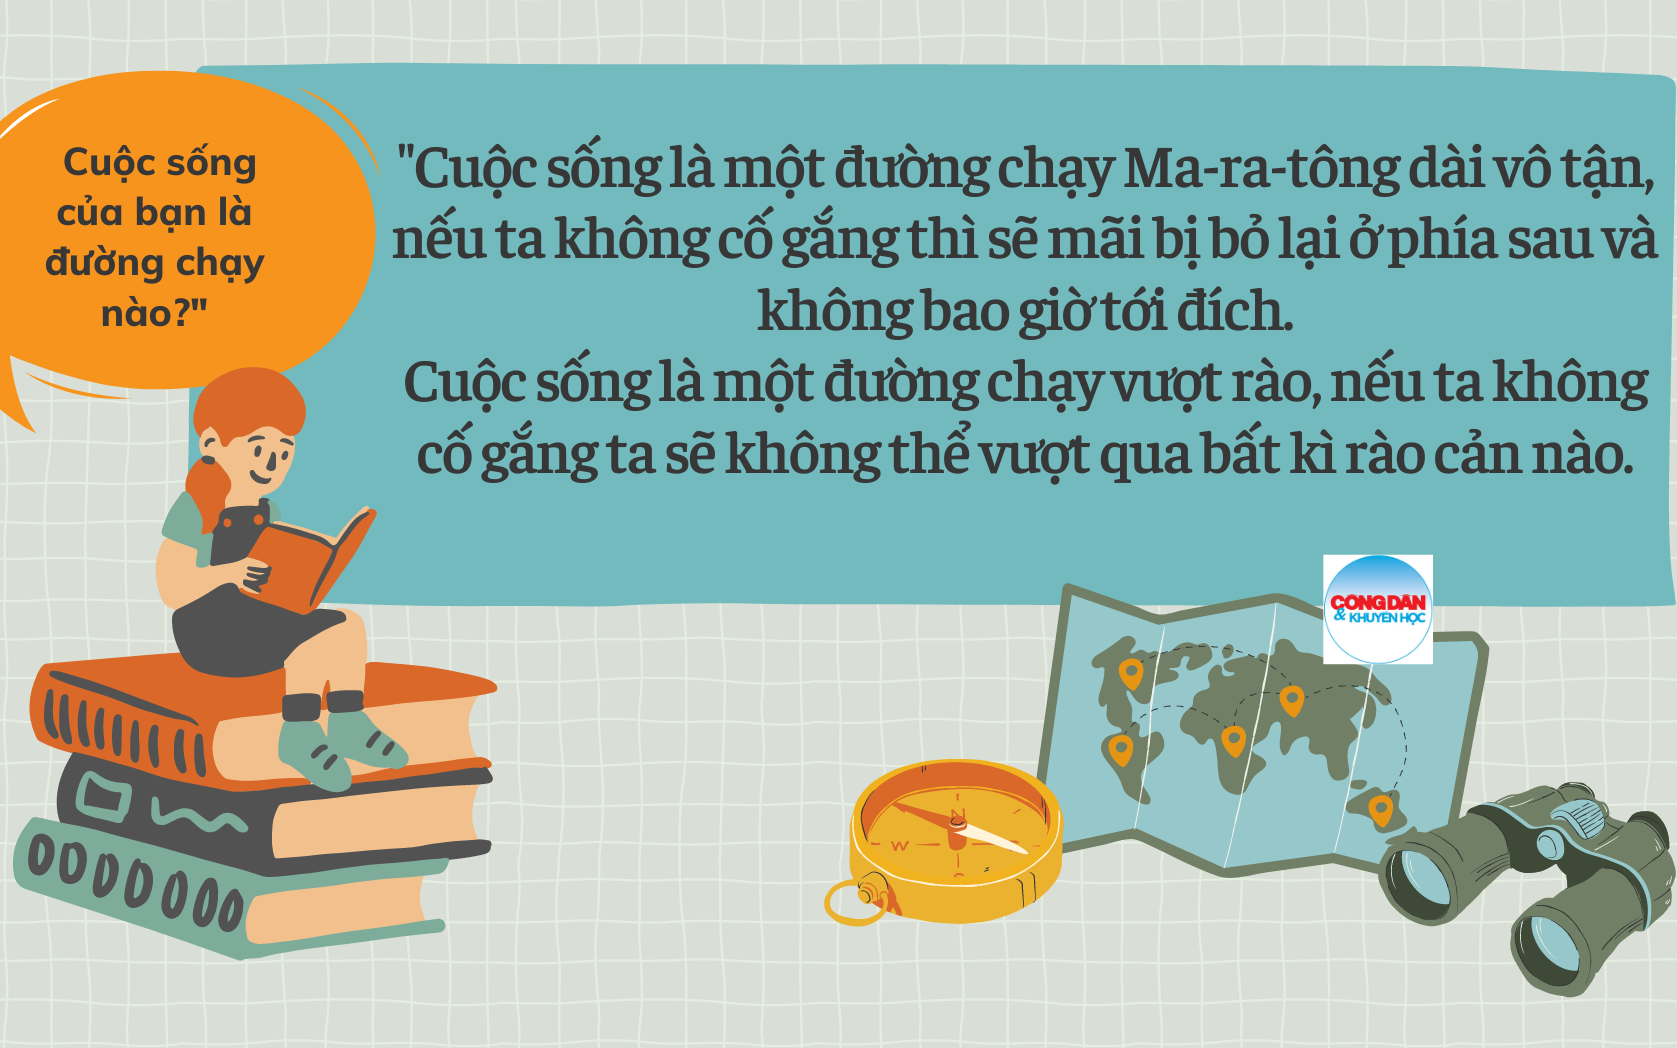 Đề thi học sinh giỏi Văn tỉnh Quảng Bình: Cuộc sống là đường chạy ma-ra-tông hay vượt rào?